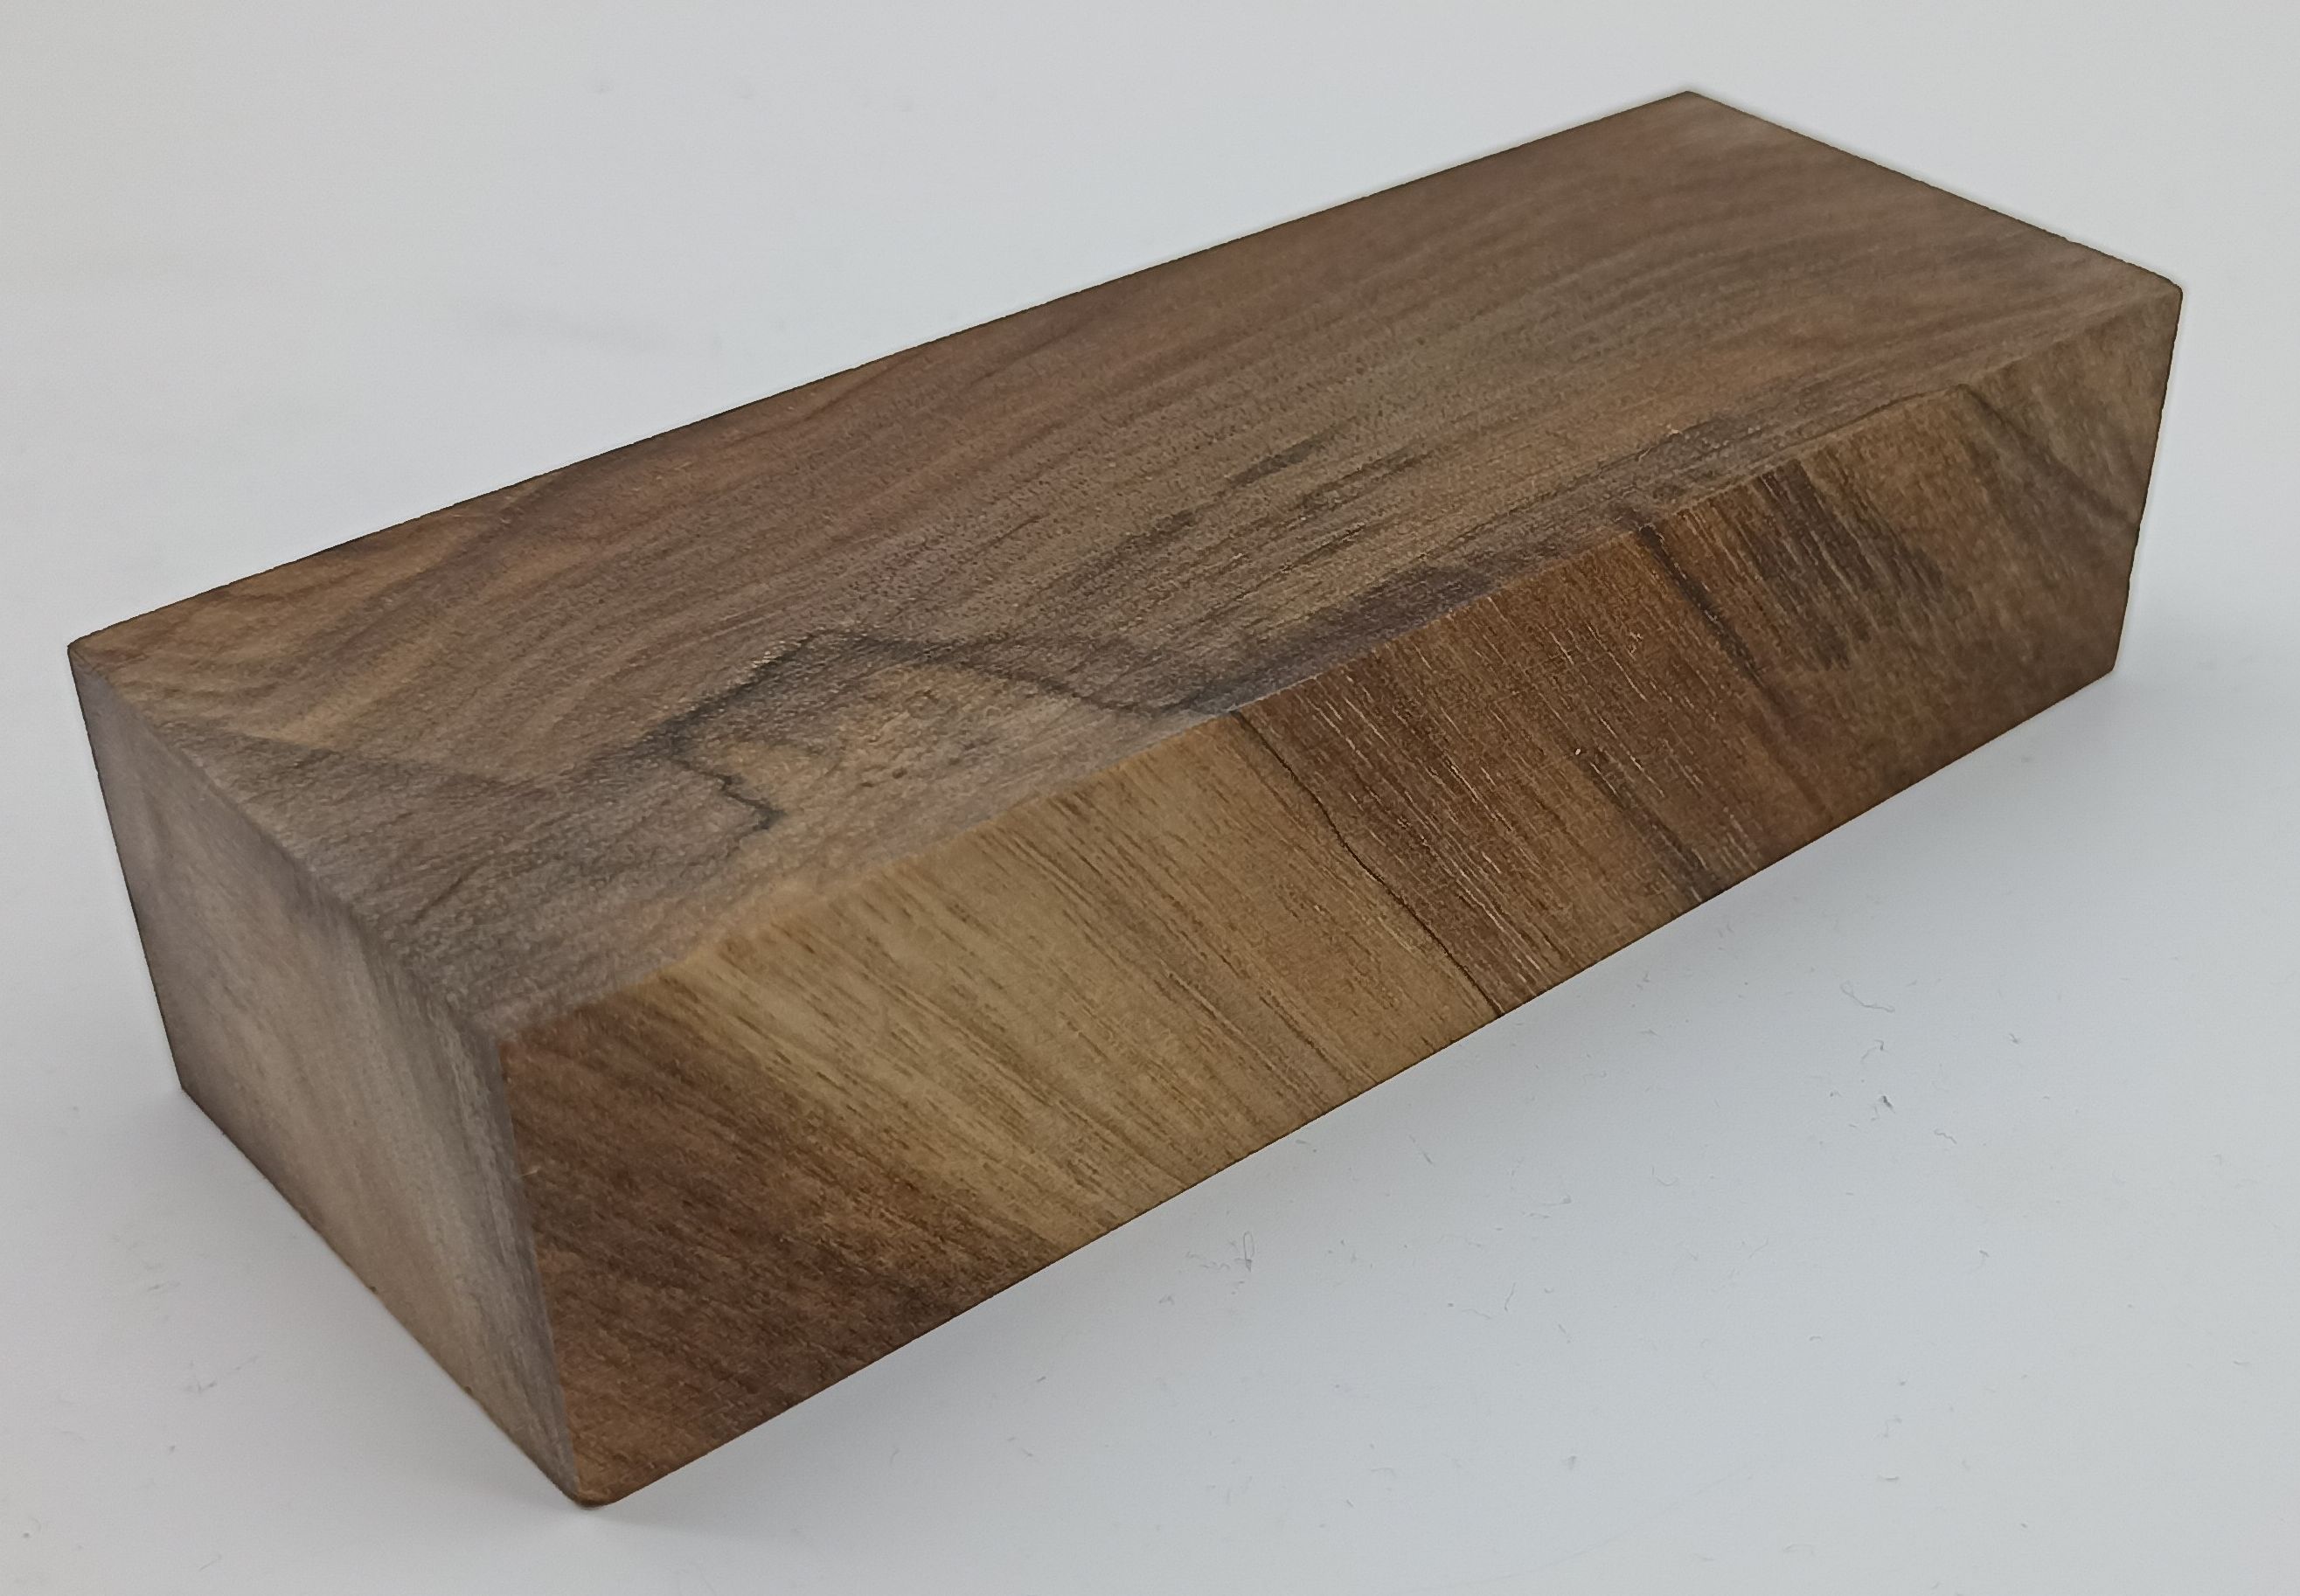 Stabilizované dřevo - ořech  128 x 47 x 31 mm